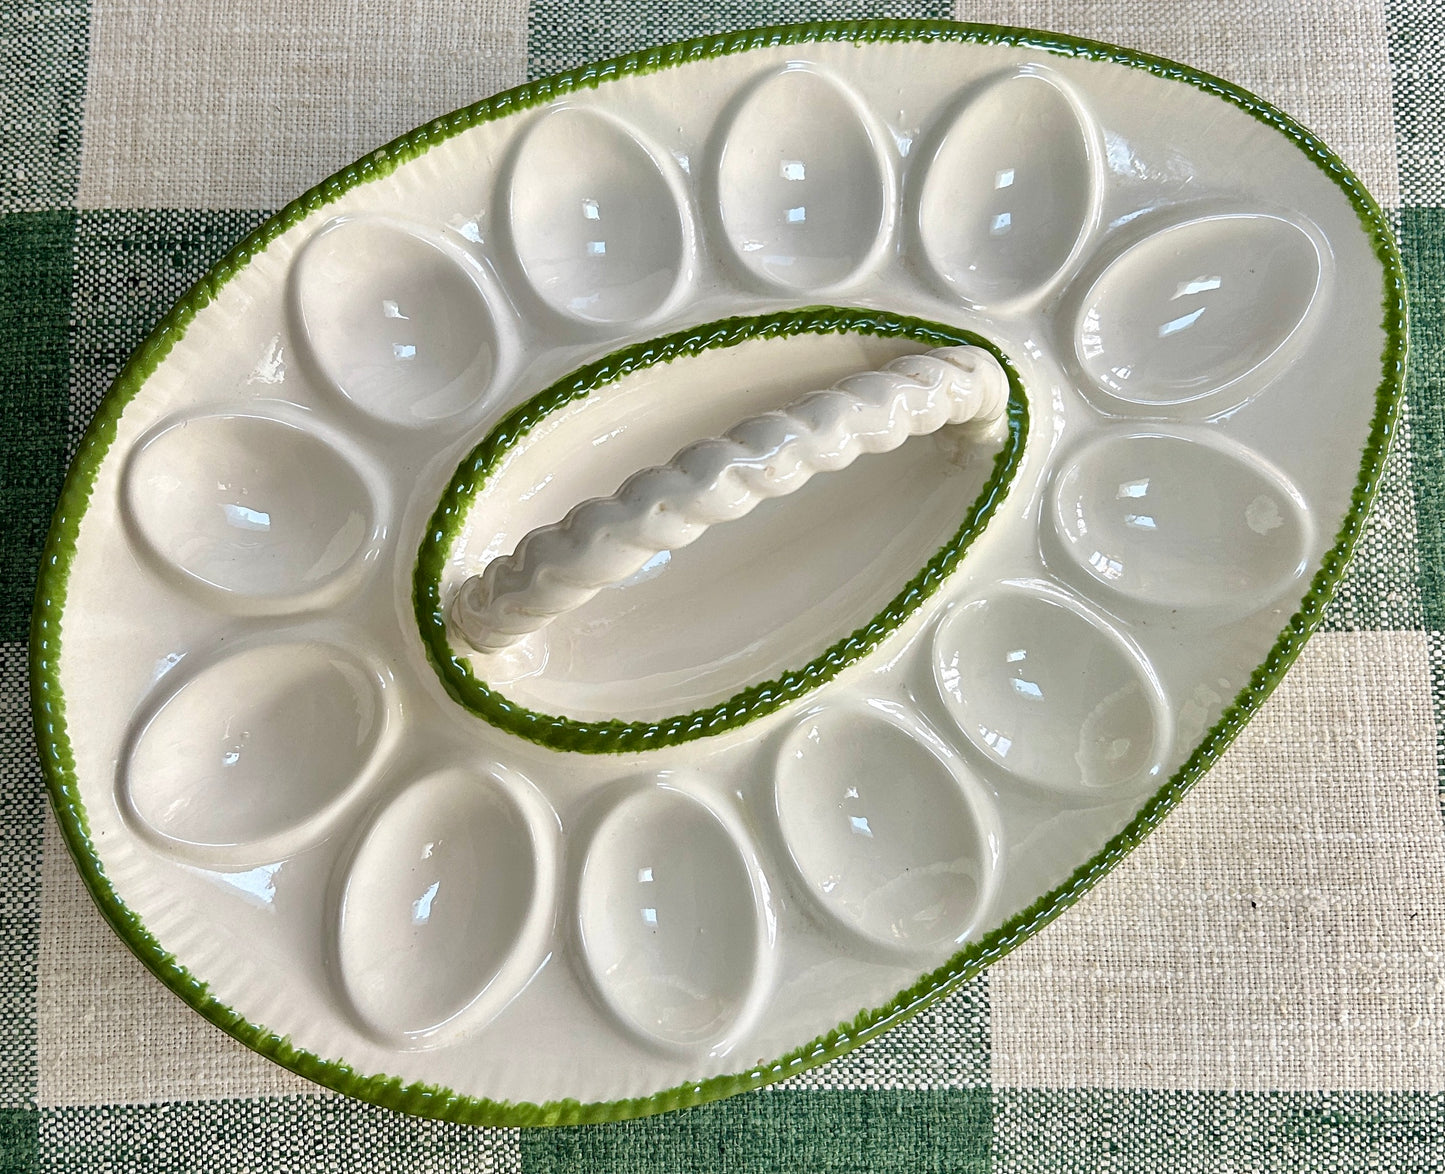 Charming Vintage Deviled Egg Platter